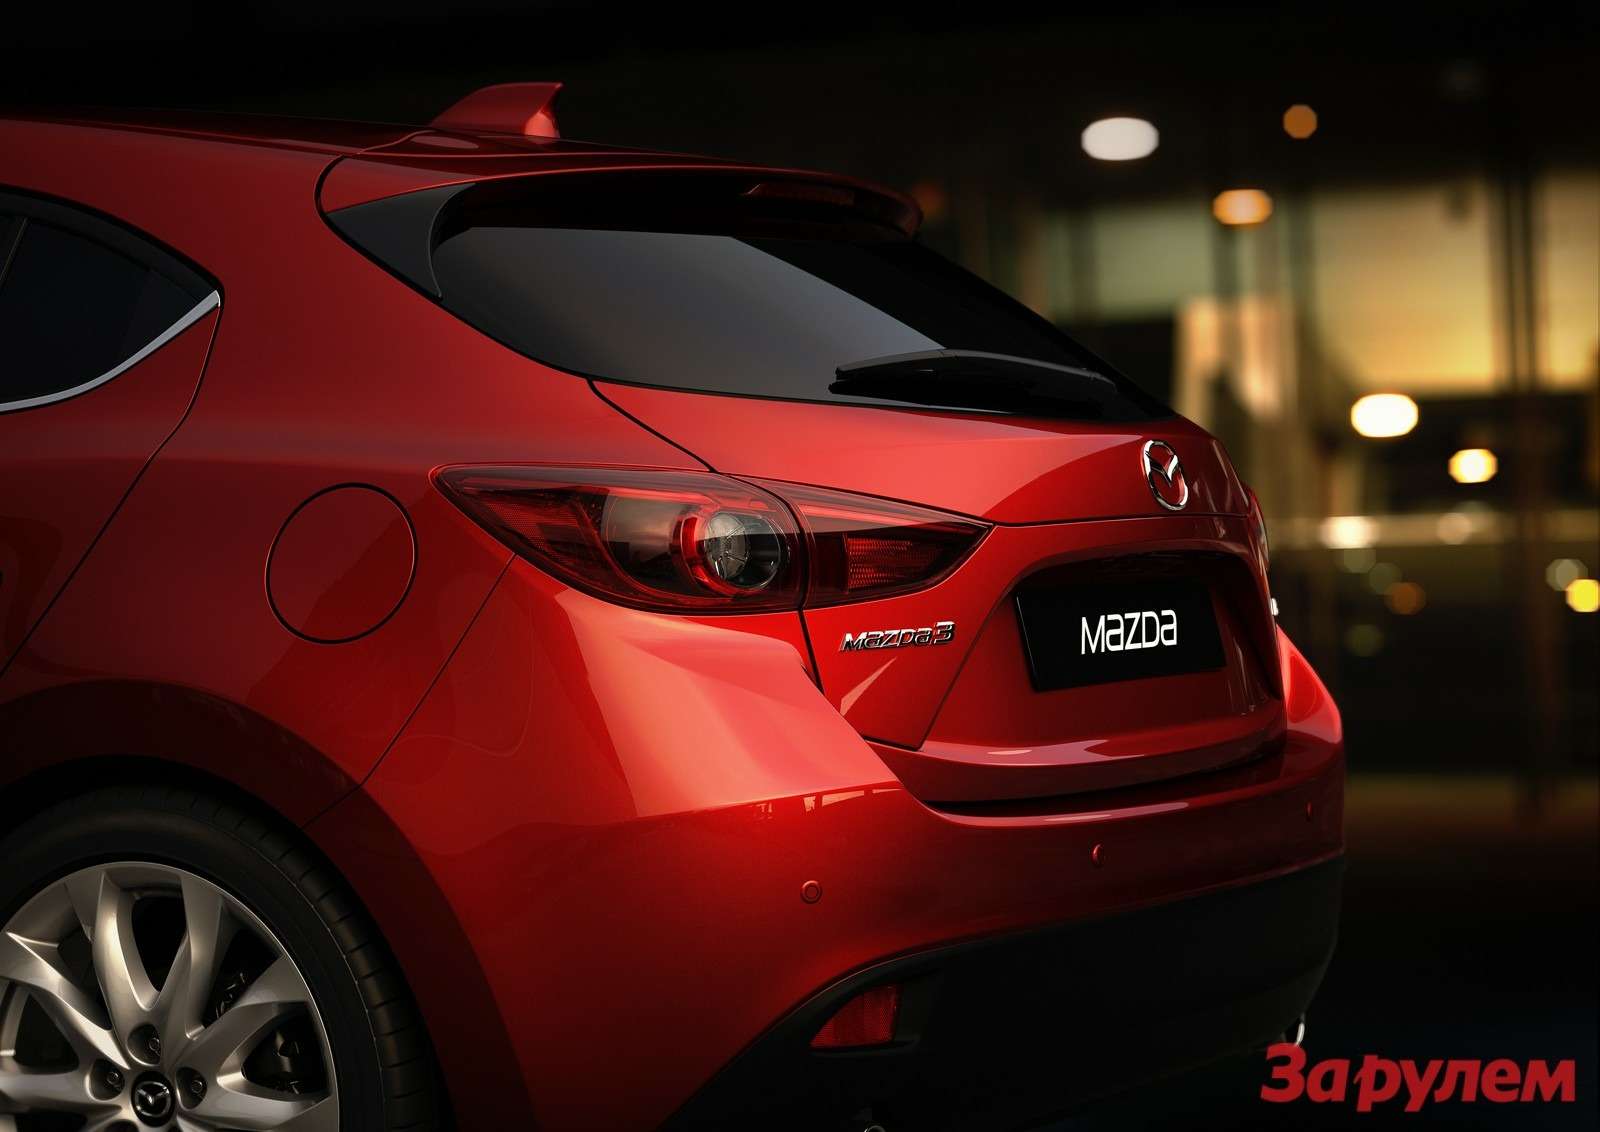 Mazda3 Hatchback 2013 detail 03 copy